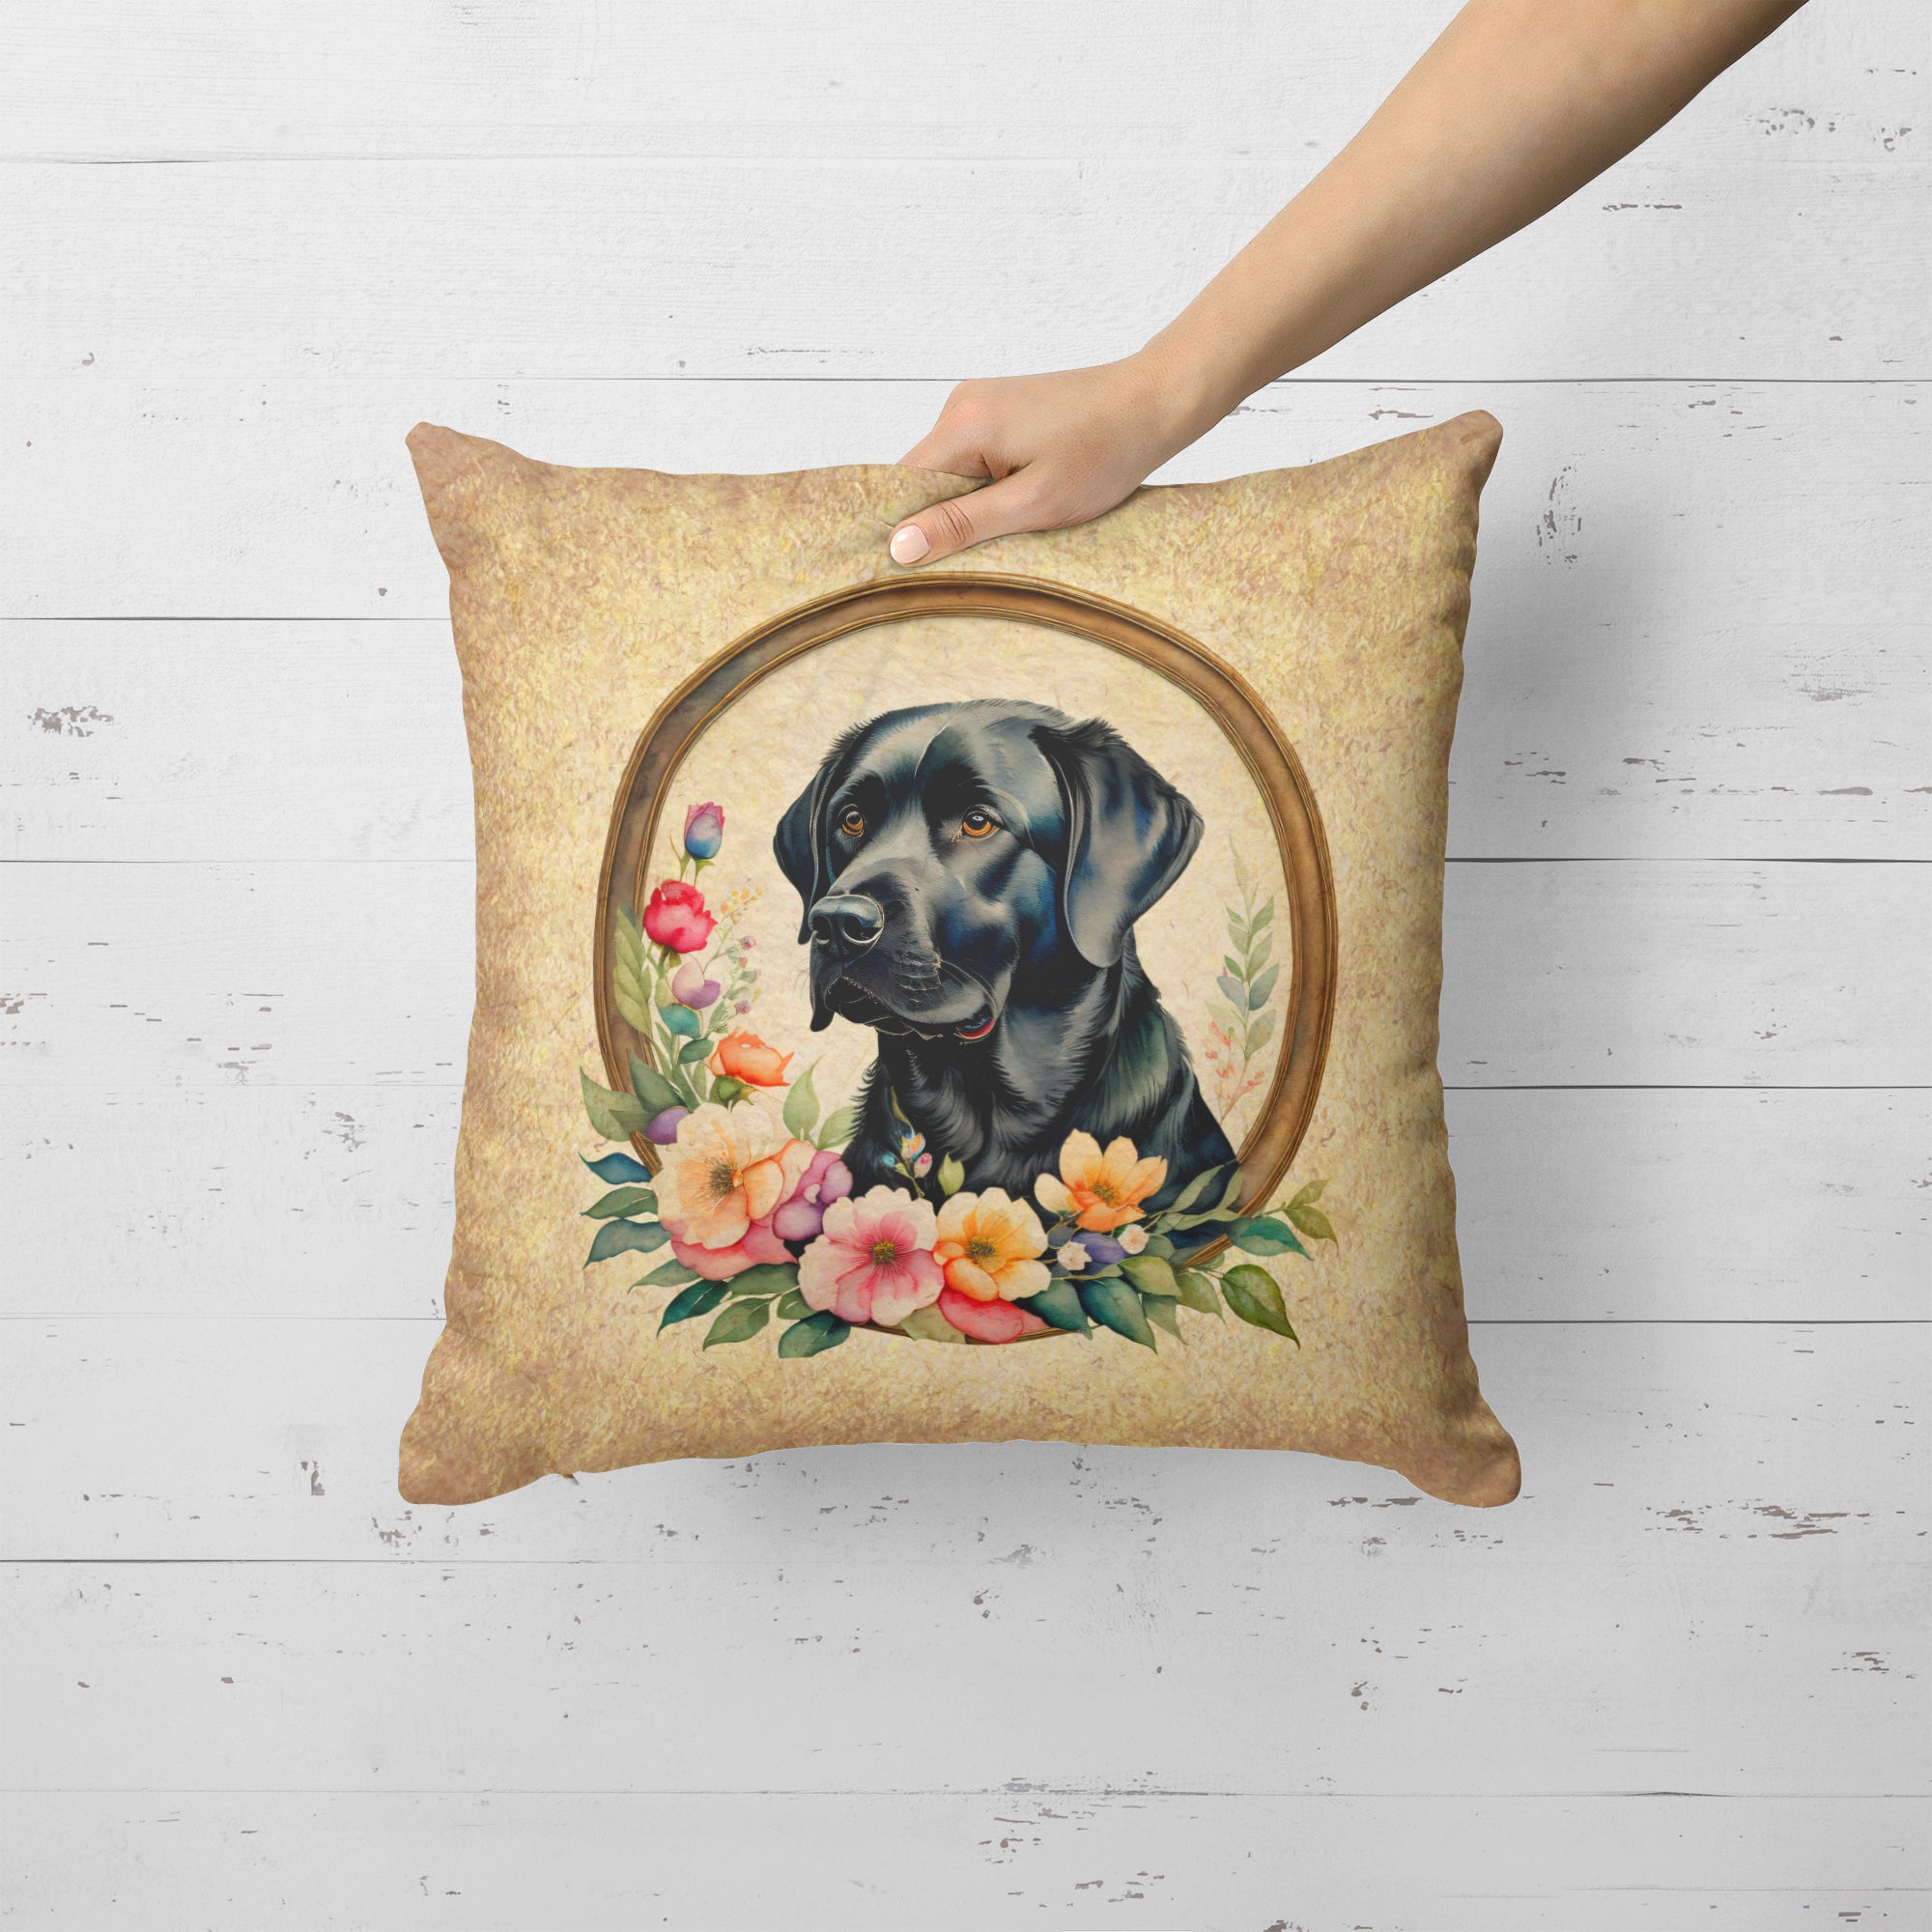 Buy this Black Labrador Retriever and Flowers Fabric Decorative Pillow